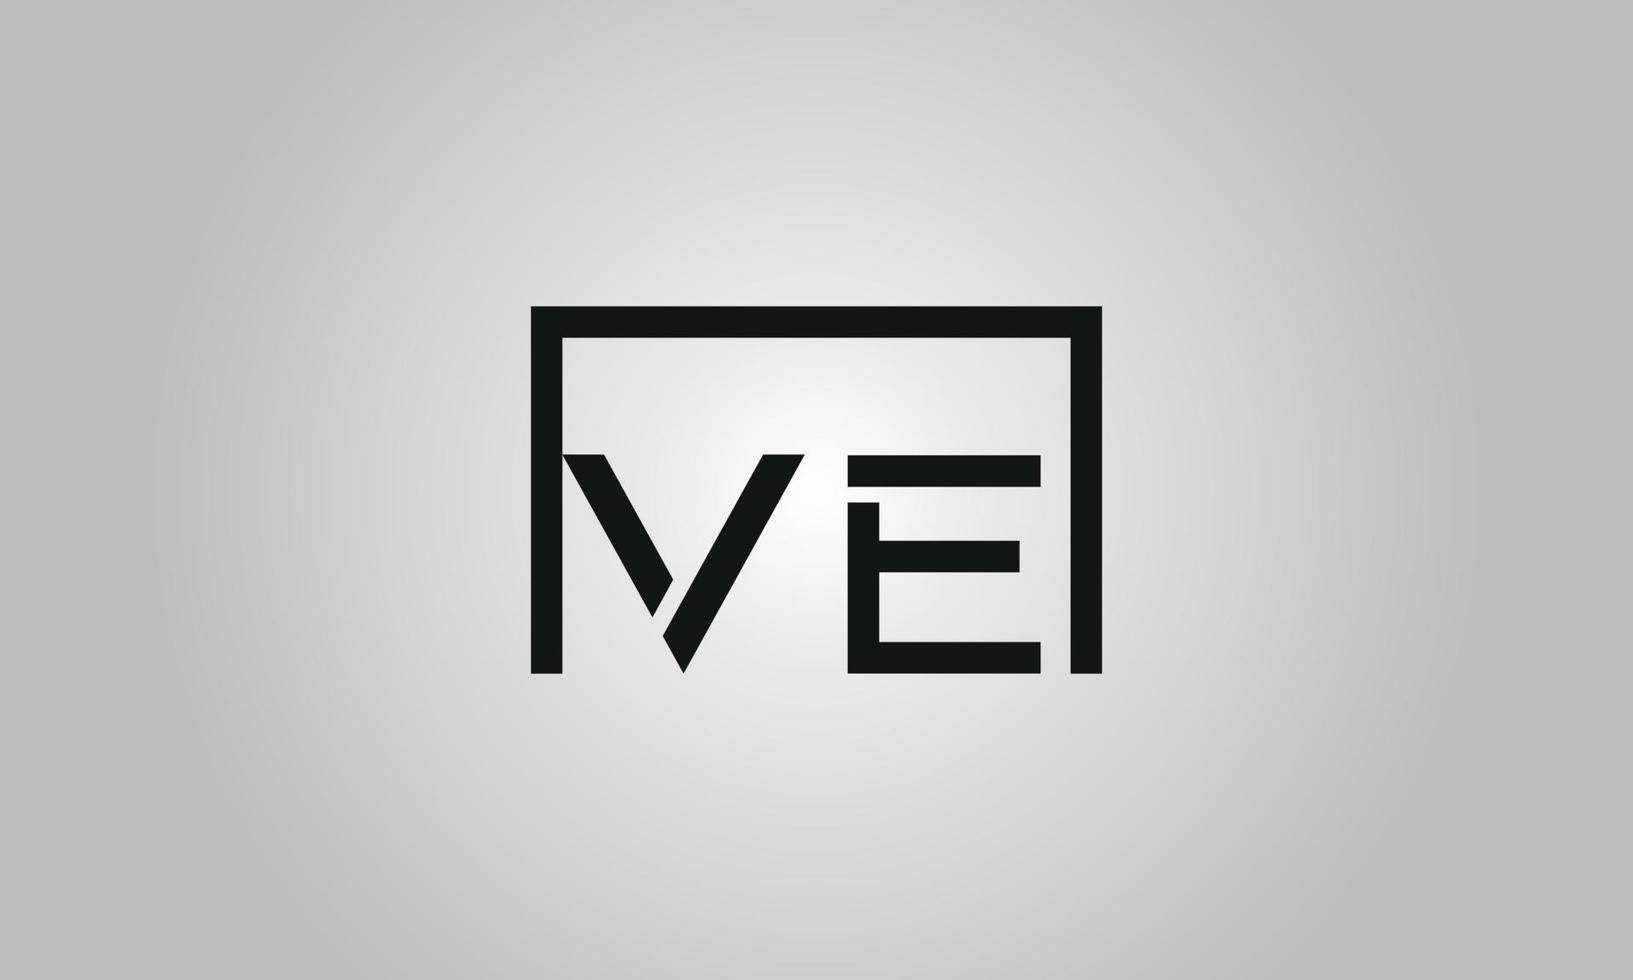 création de logo lettre v. logo ve avec forme carrée dans le modèle vectoriel gratuit de couleurs noires.